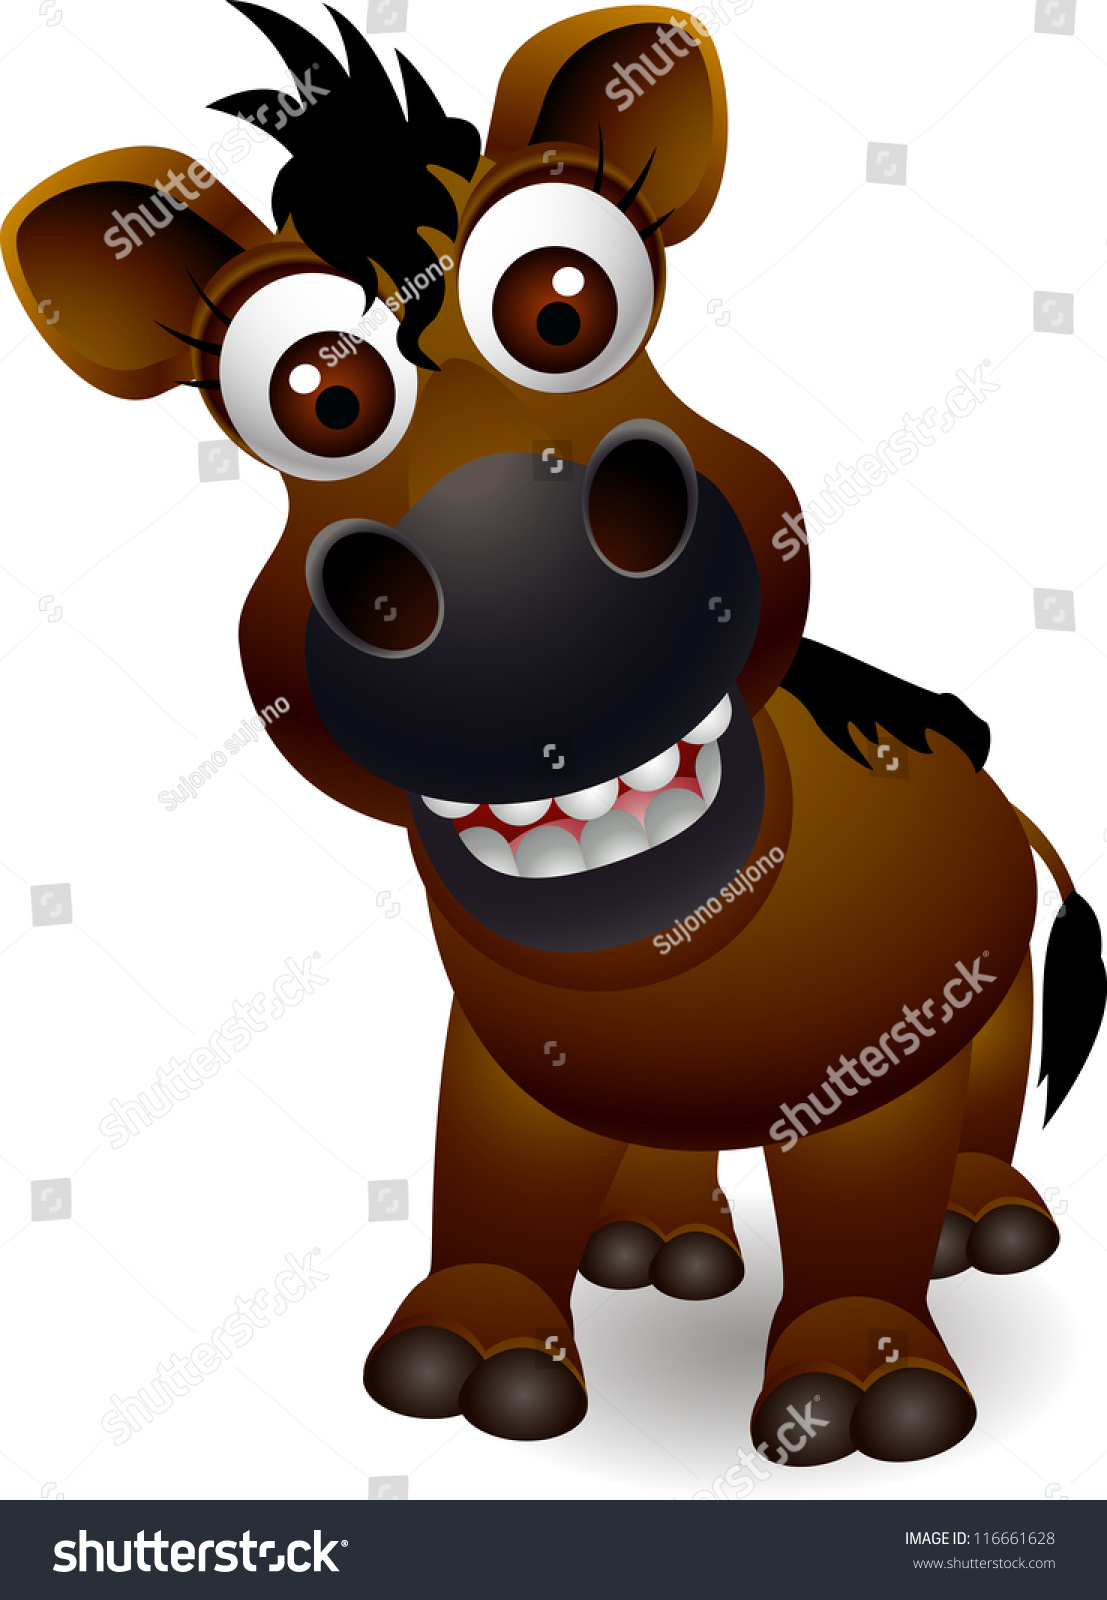 Funny Horse Cartoon Stock Vector Illustration 116661628 : Shutterstock